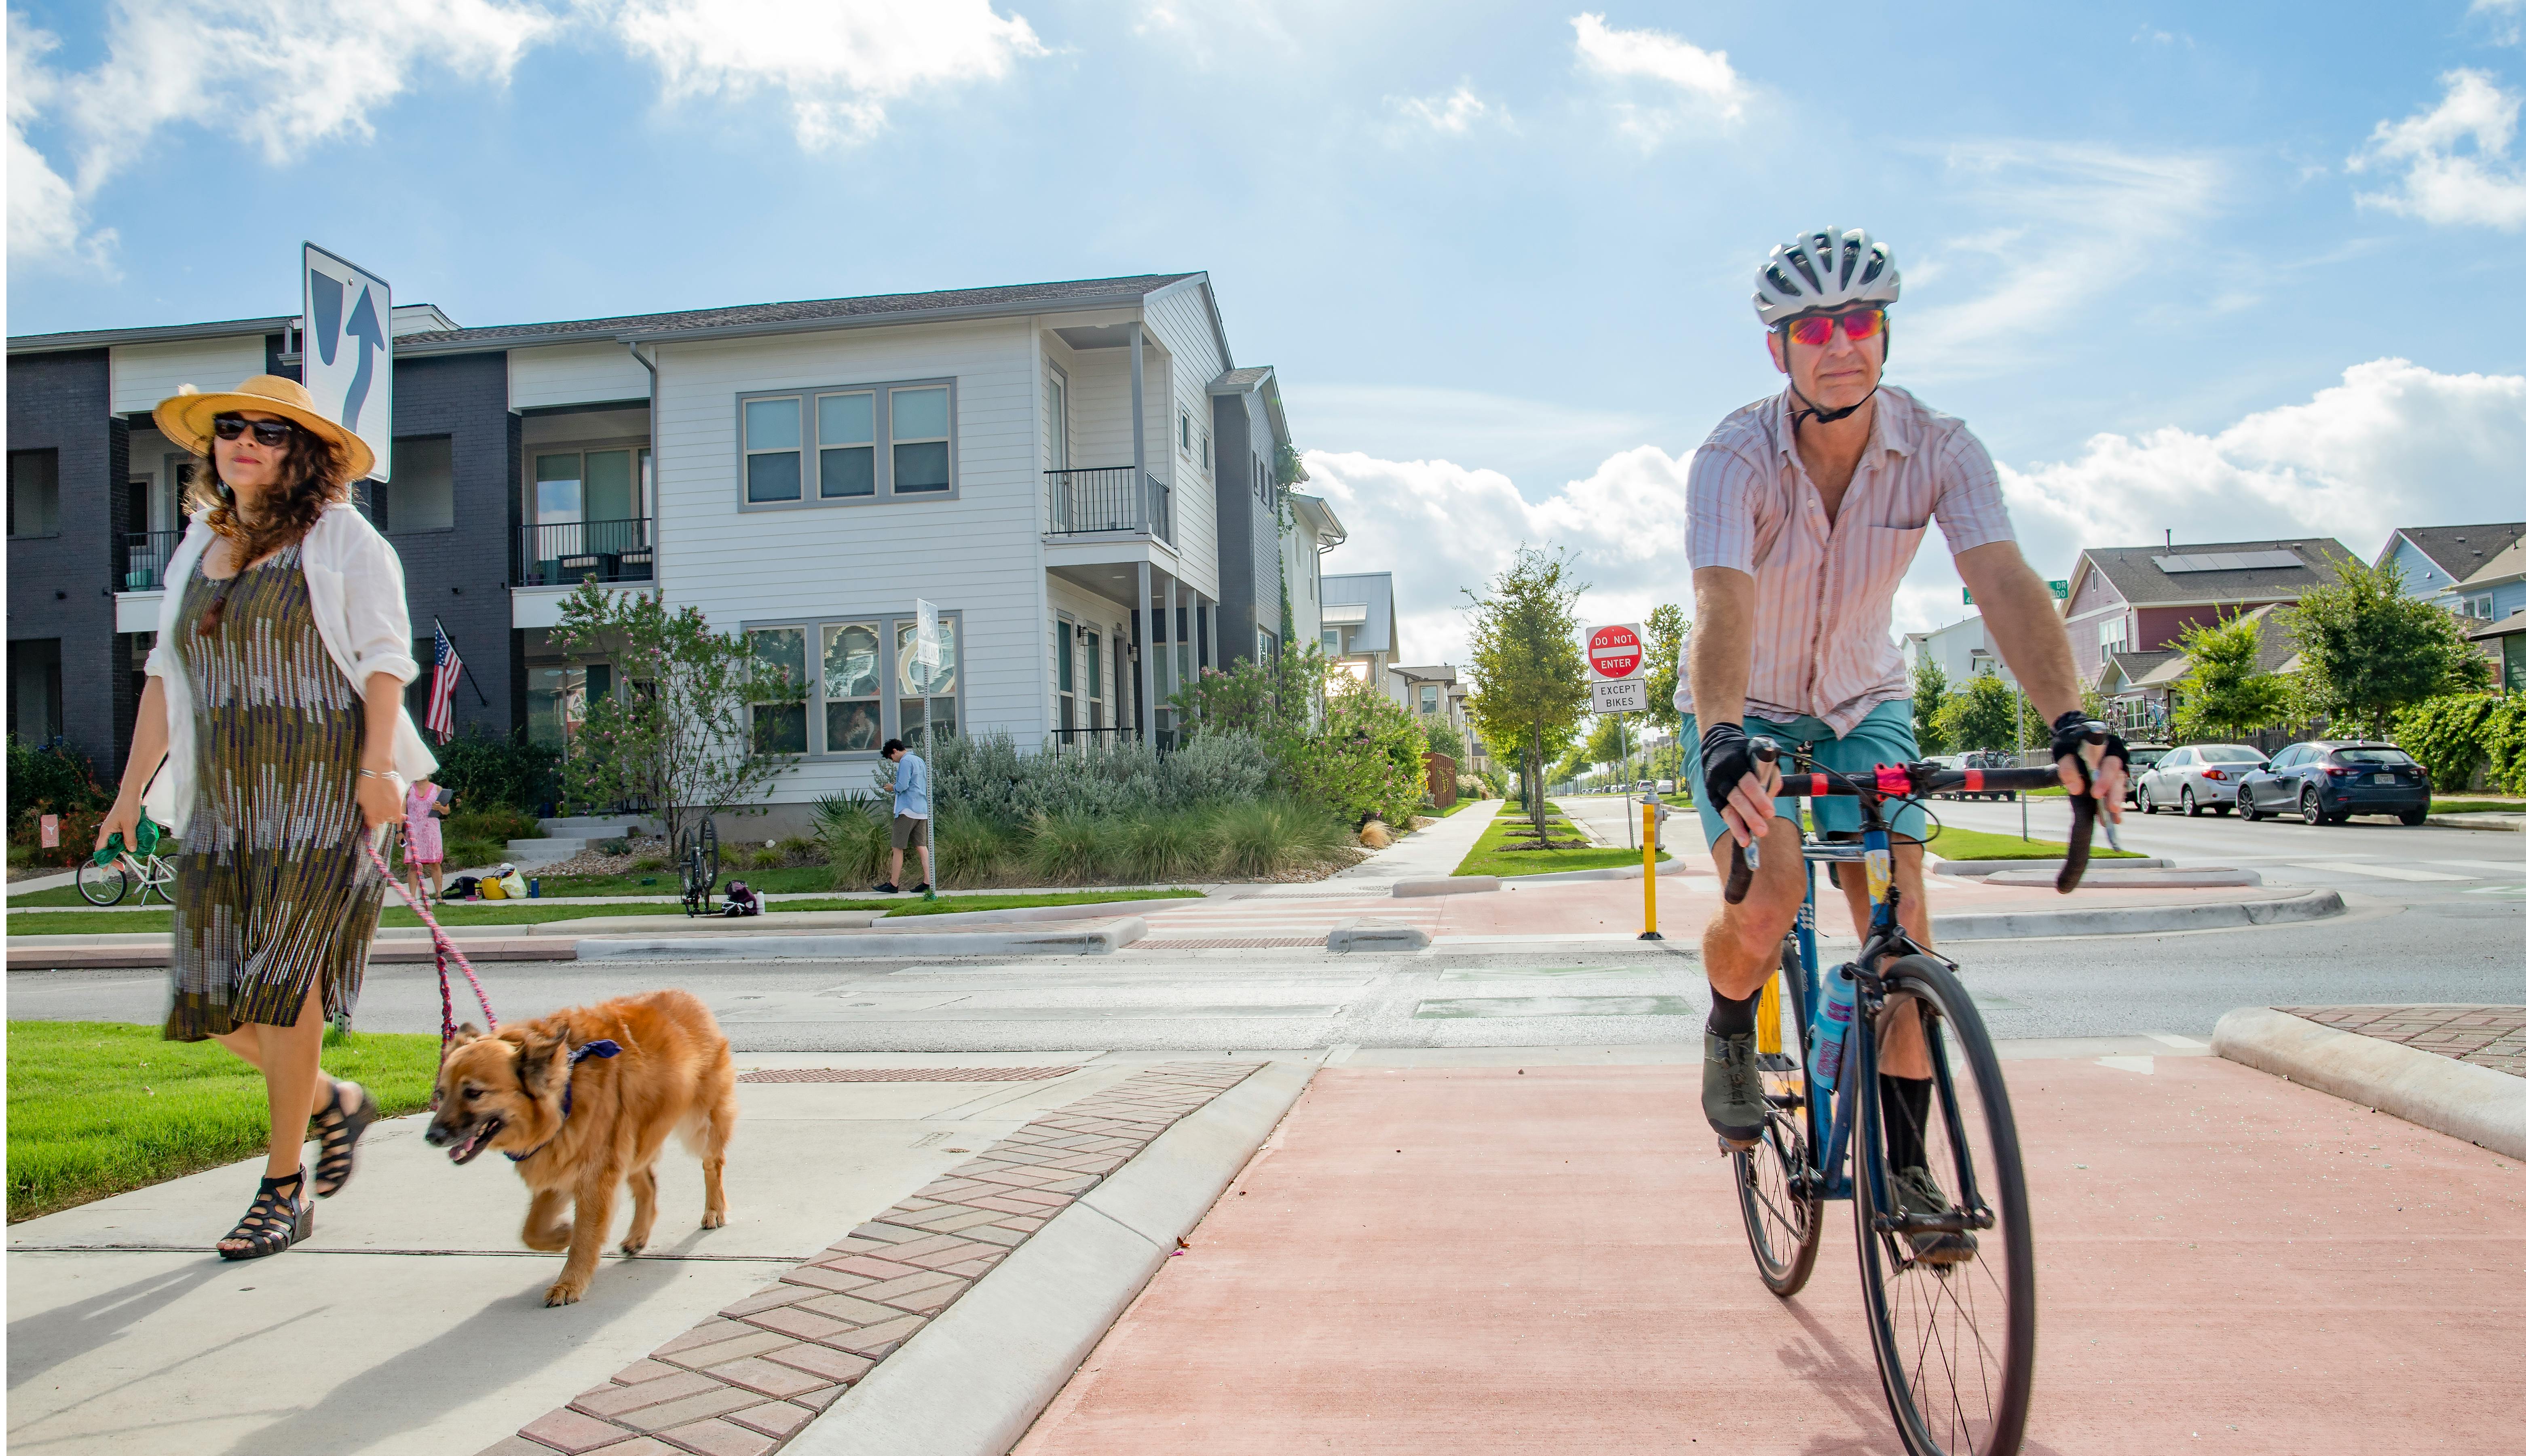 Multi-module transportation example of woman walking dog on walking lane and man riding bicycle on bike lane